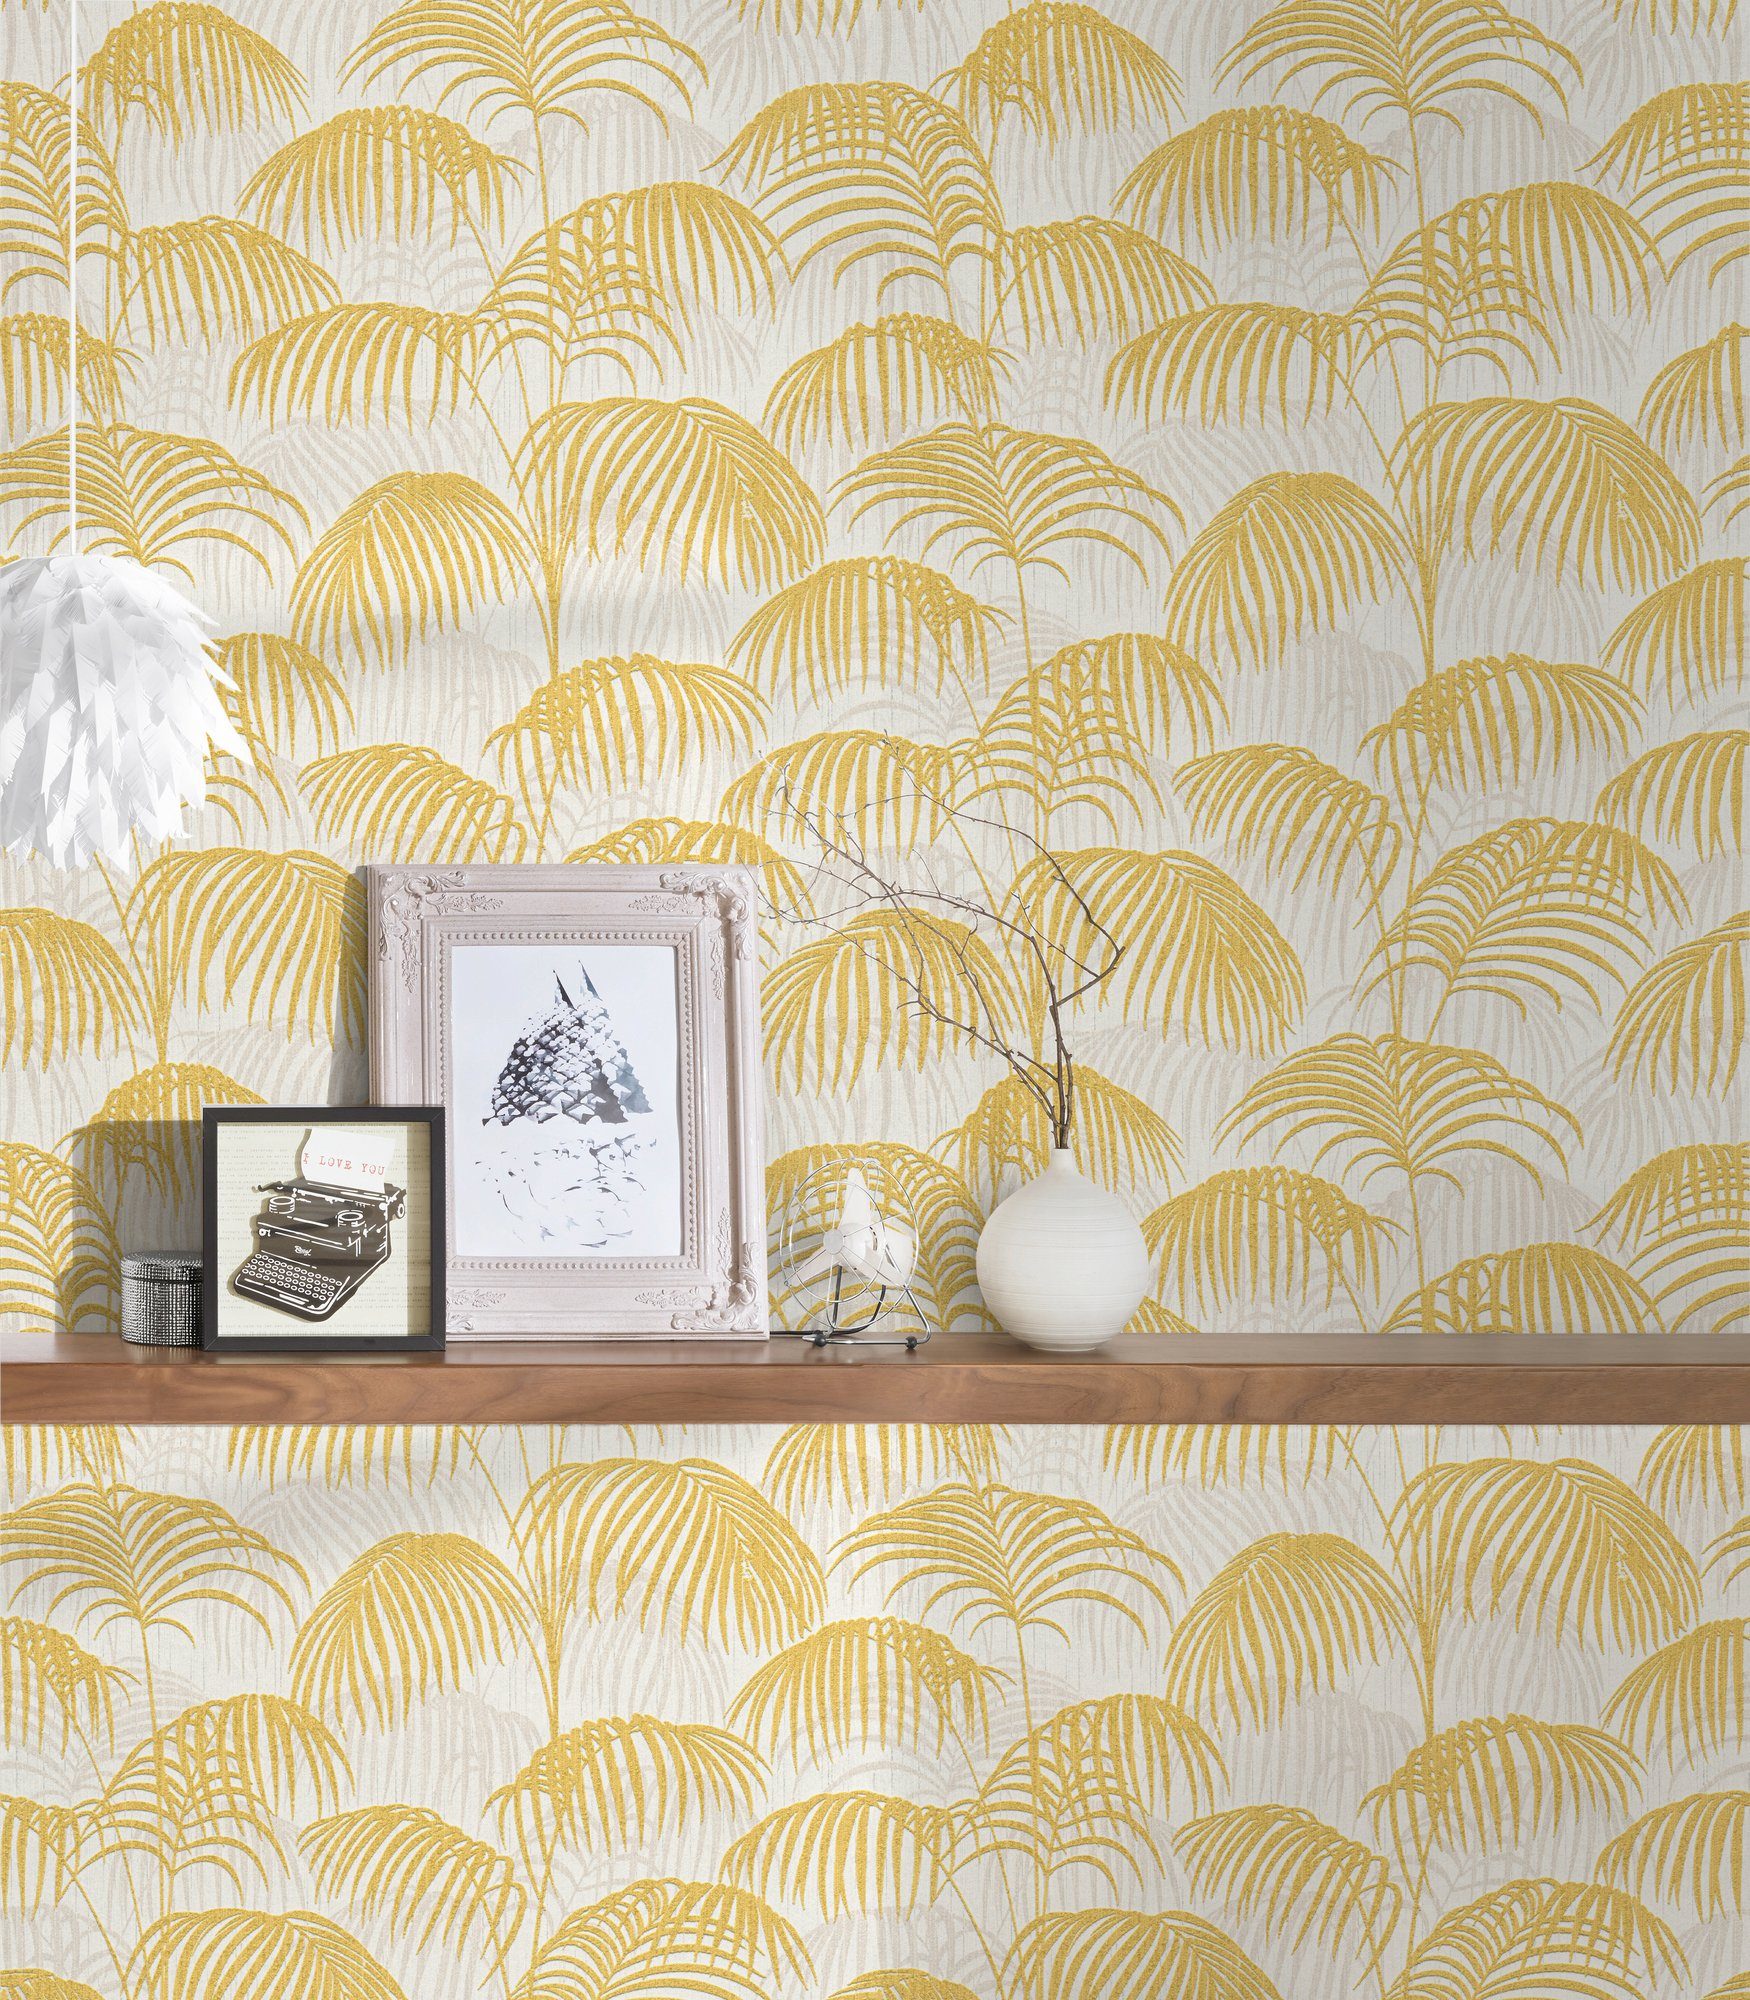 Palmen Tapete Textiltapete A.S. Dschungeltapete floral, gold/gelb/weiß Paper samtig, Architects botanisch, Tessuto, Création